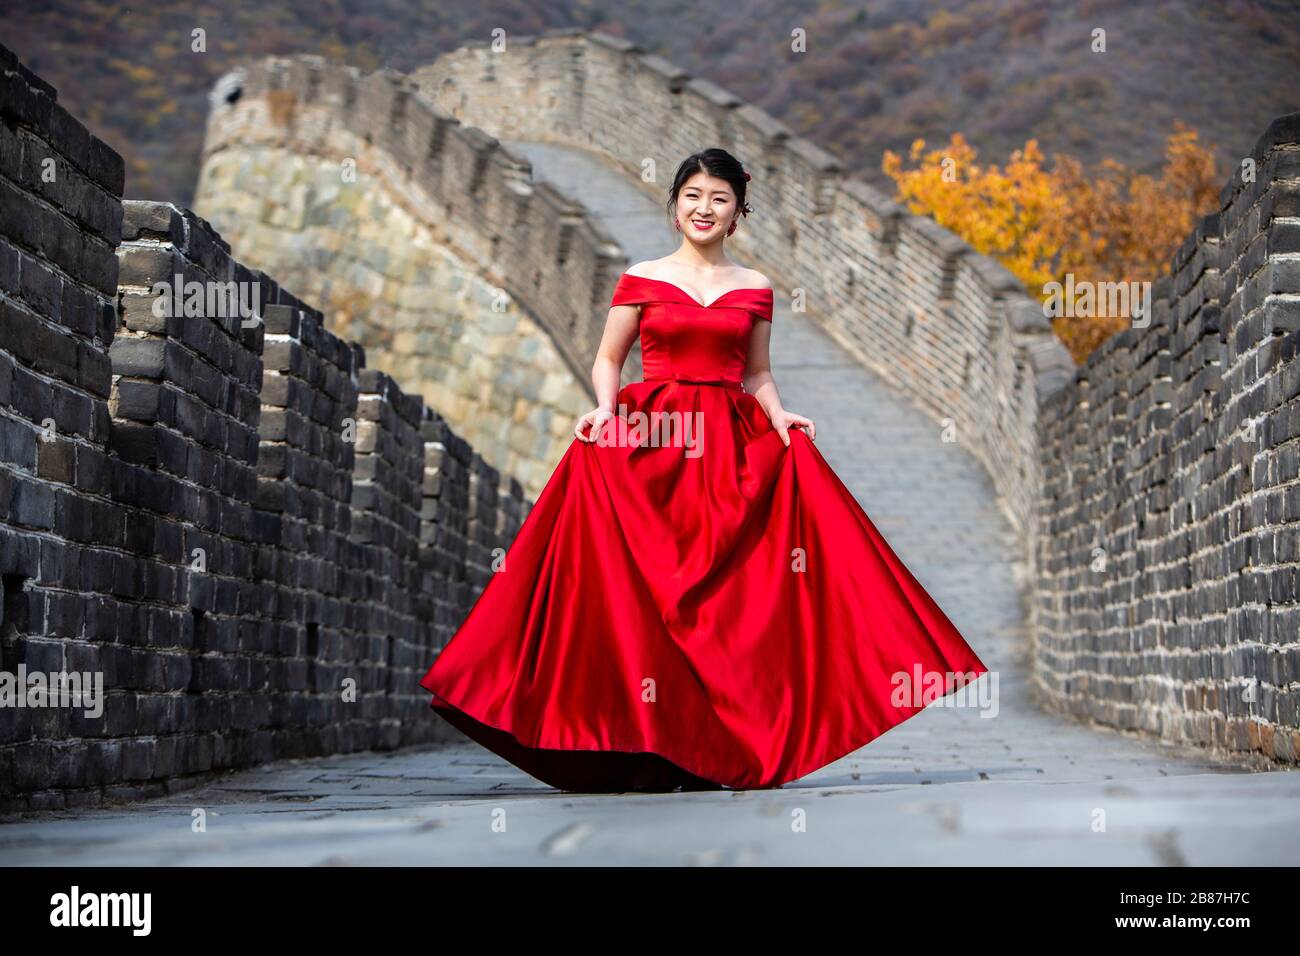 Wedding portrait at Mutianyu Great Wall of China Stock Photo